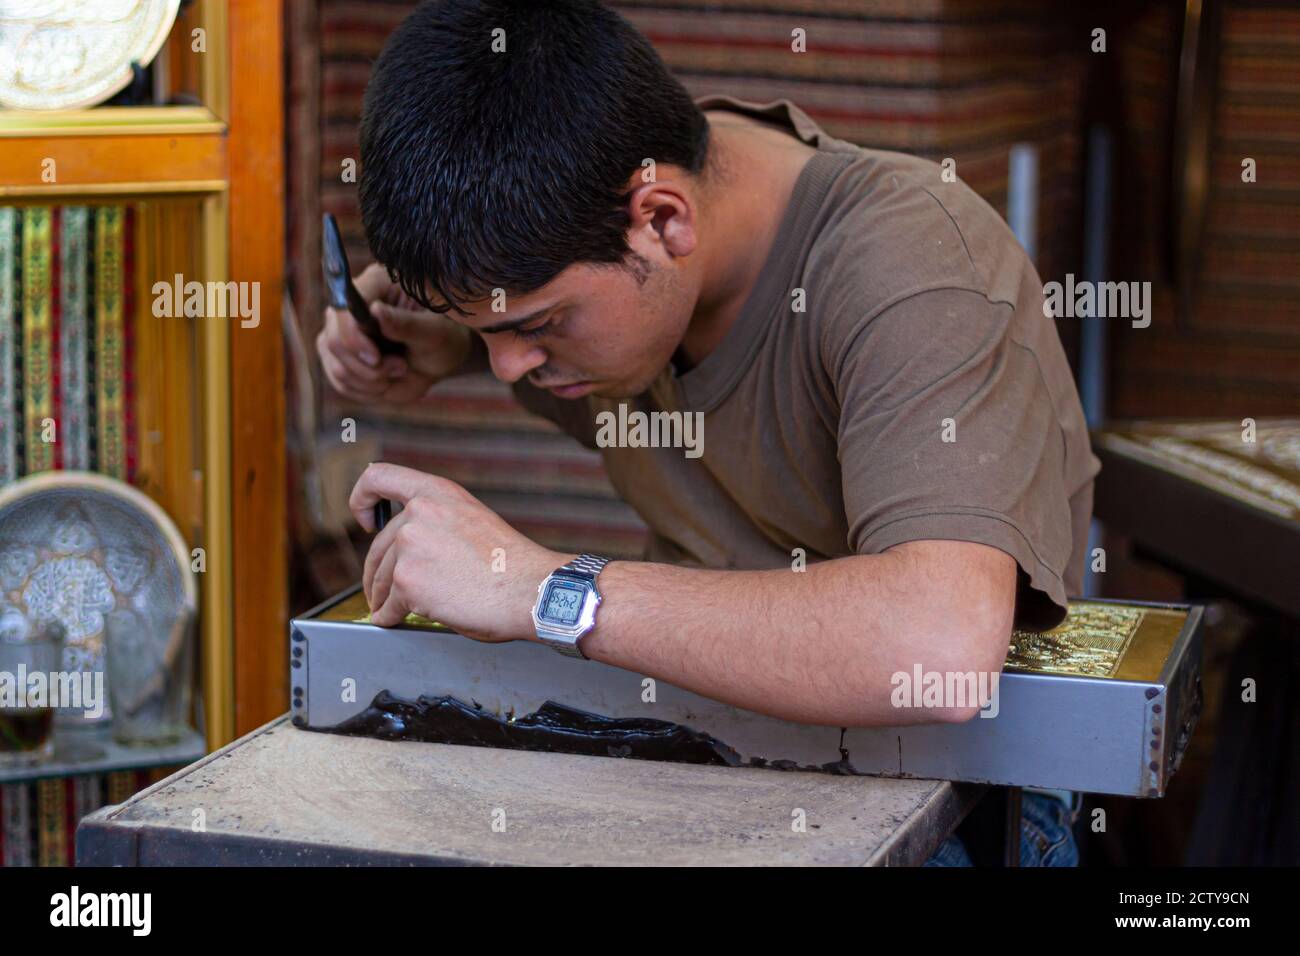 Damas ,Syrie 03/27/2010: Gros plan d'un jeune artiste au travail. Il sculptait soigneusement une plaque de cuivre avec des décorations traditionnelles à l'aide d'un marteau Banque D'Images